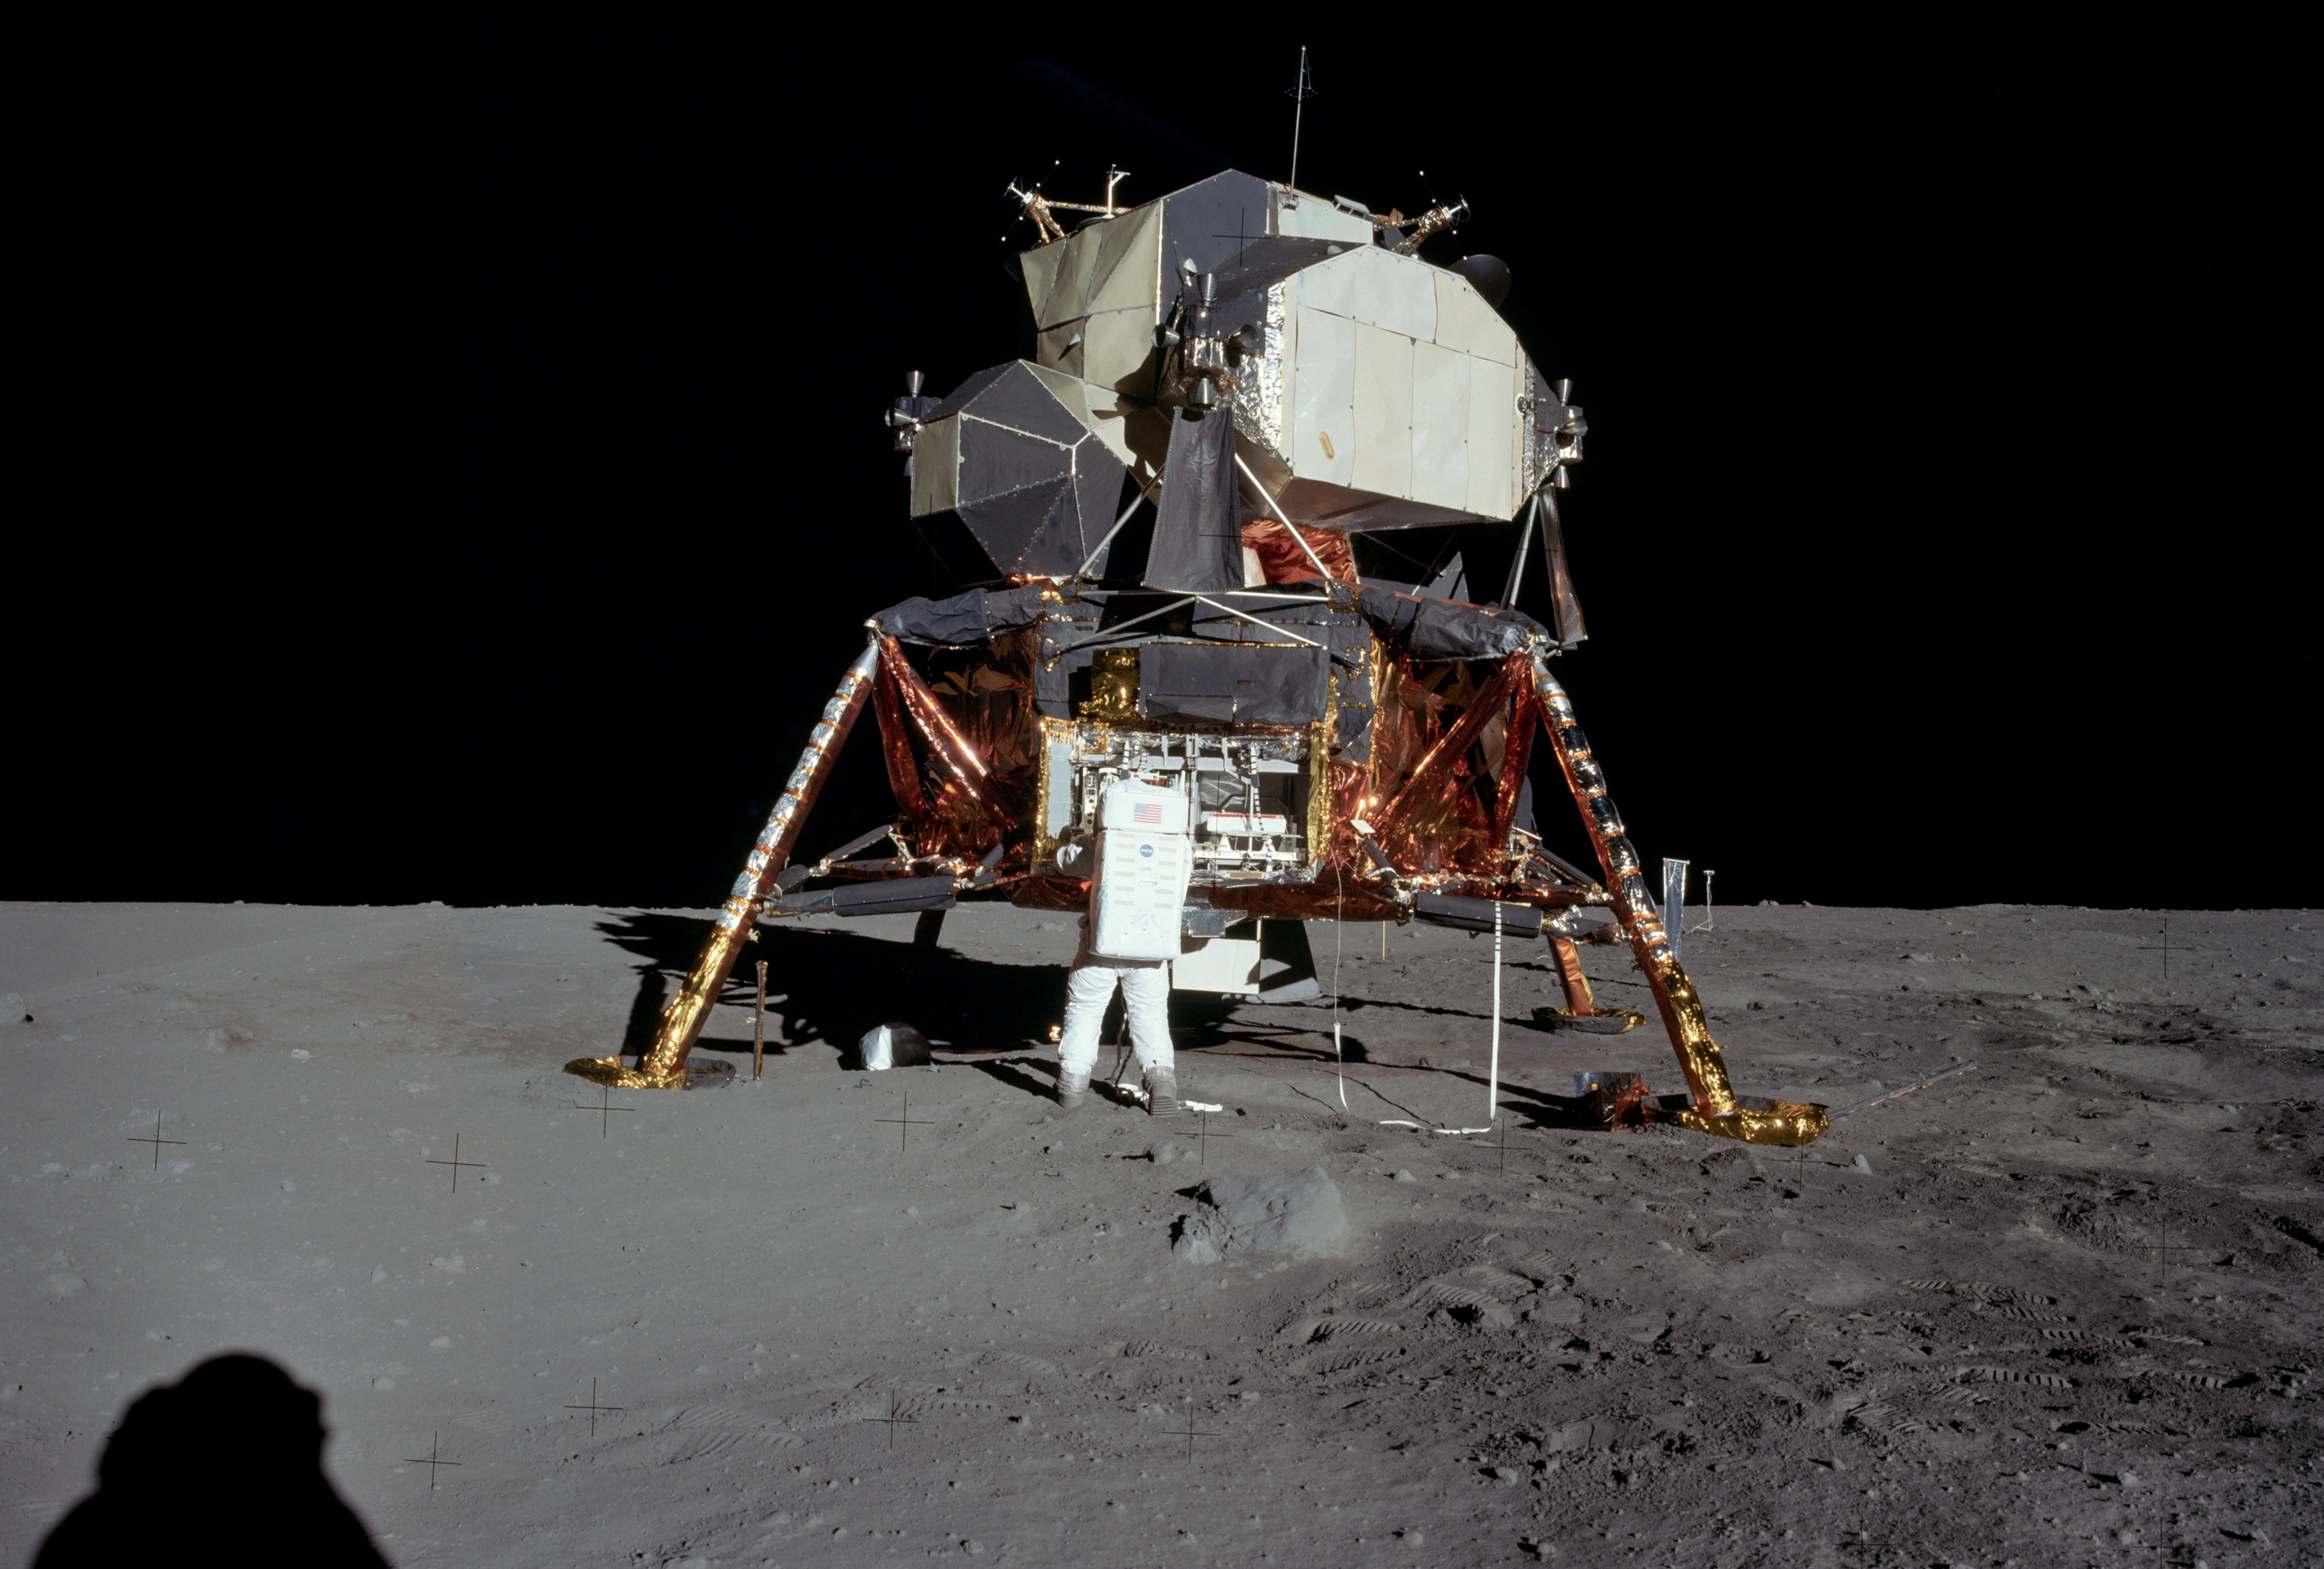 Шагающий по луне. Аполлон 11. Старт Аполлона 11. Apollo 11 Lunar Module. Лунный модуль корабля Аполлон 11 НАСА.